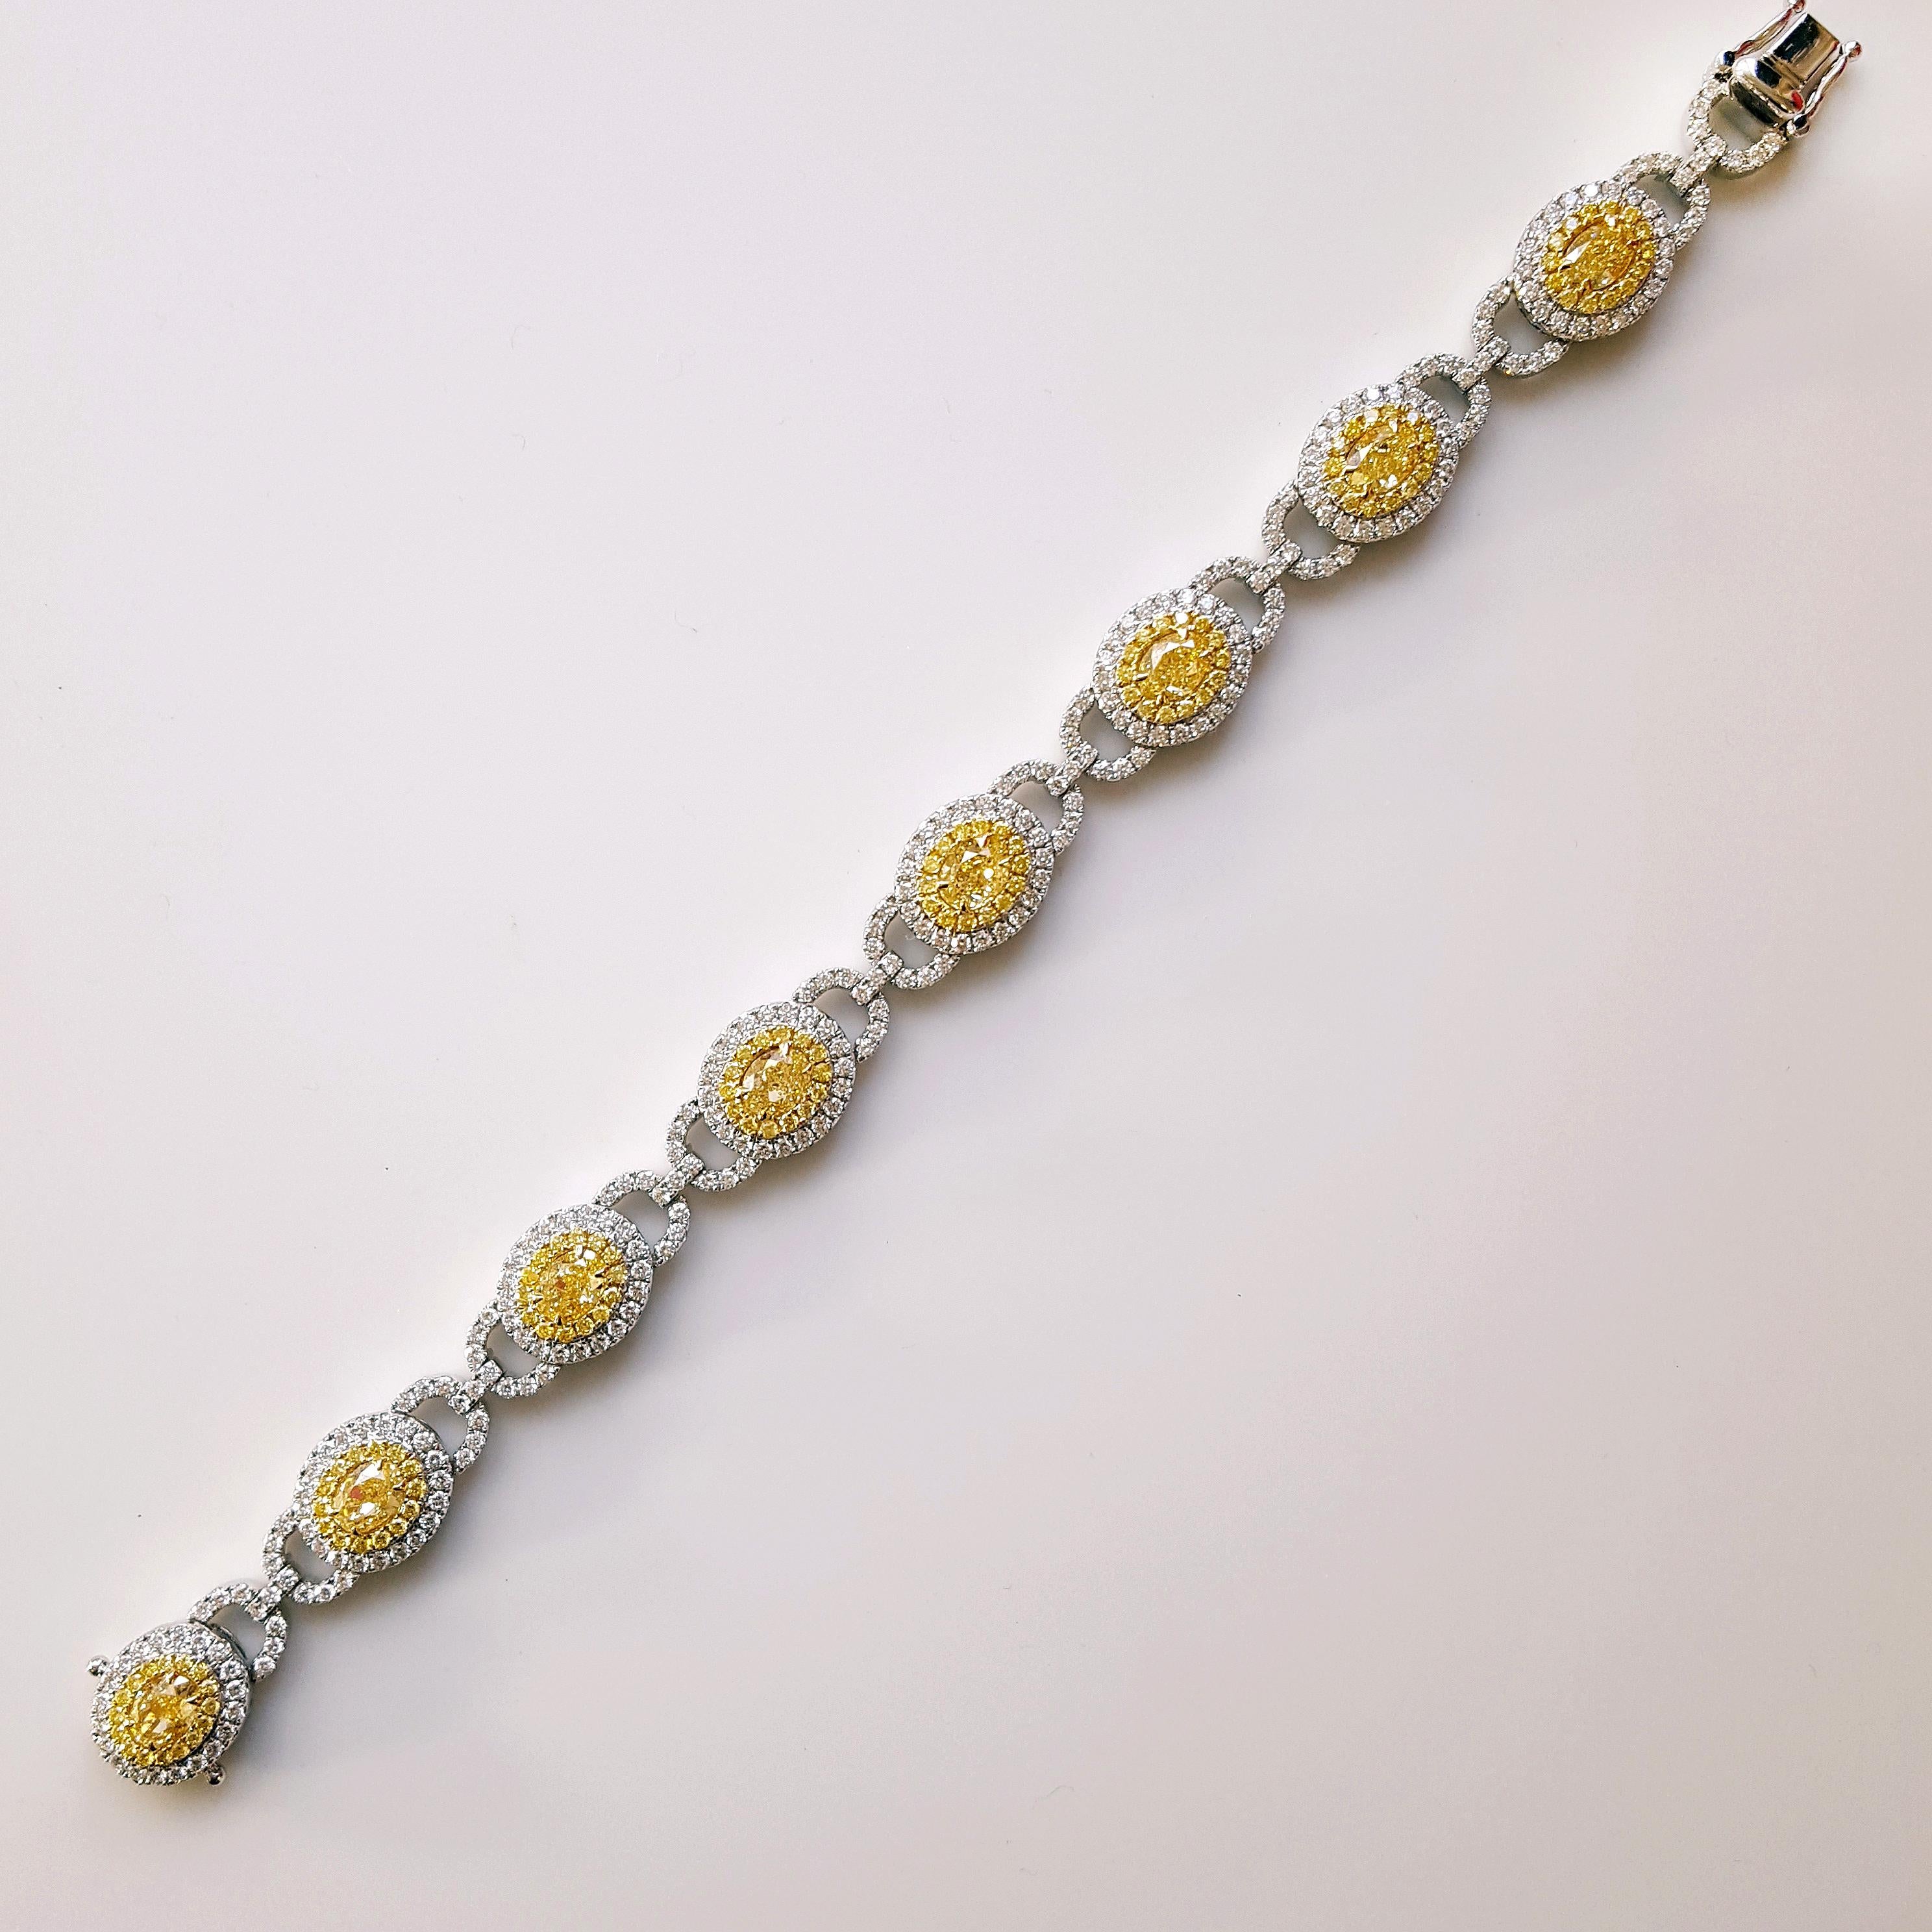 Un bracelet d'apparat tout à fait remarquable, avec en son cœur un ensemble éblouissant de 8 diamants jaunes de taille ovale pesant au total 5,59 carats. Chacun de ces exquis diamants jaunes est bercé dans une monture en or jaune 18 carats et en or